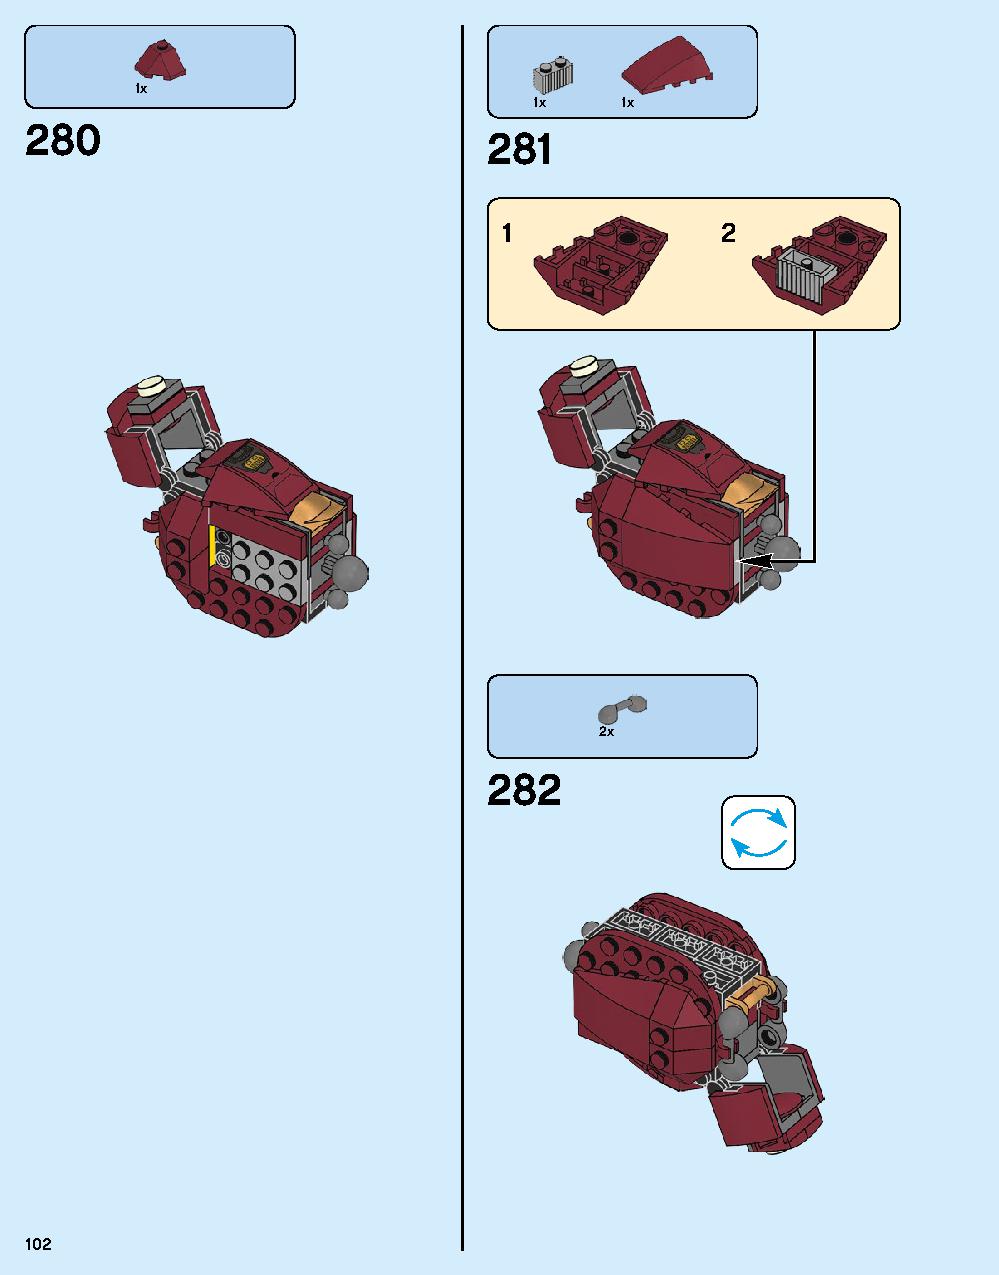 ハルクバスター：ウルトロン・エディション 76105 レゴの商品情報 レゴの説明書・組立方法 102 page